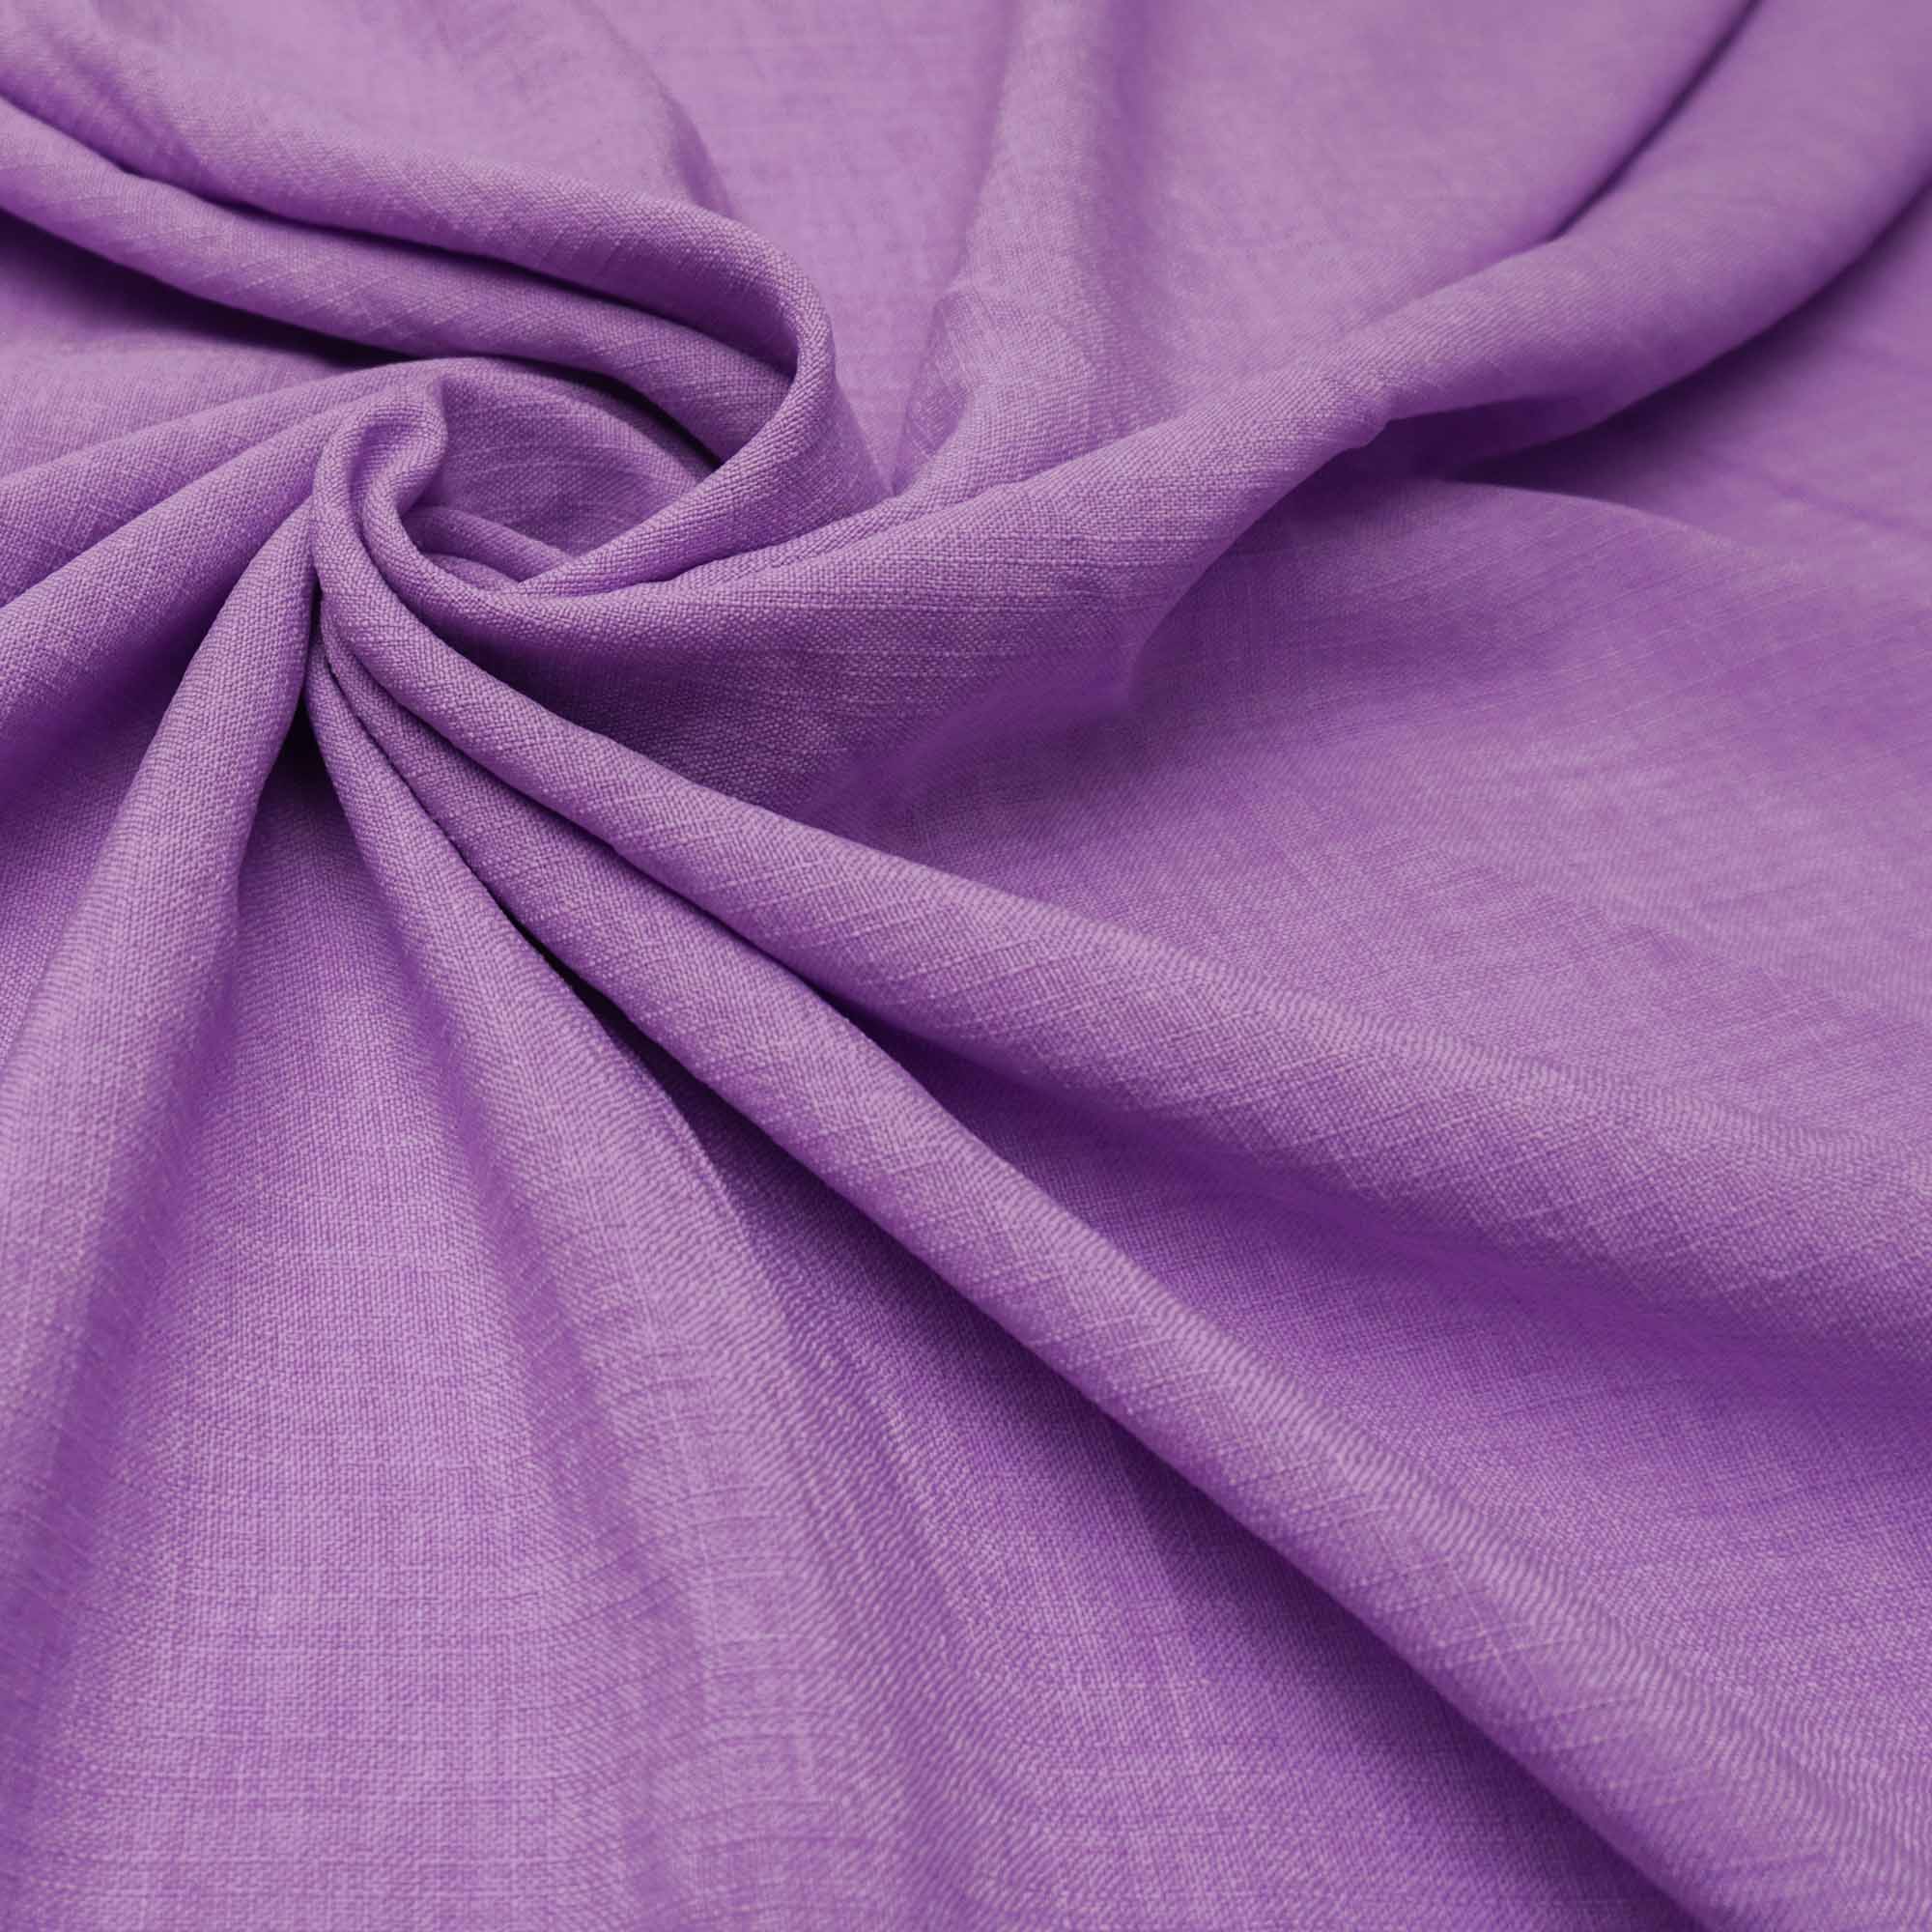 Tecido poliester com textura de linho lilás